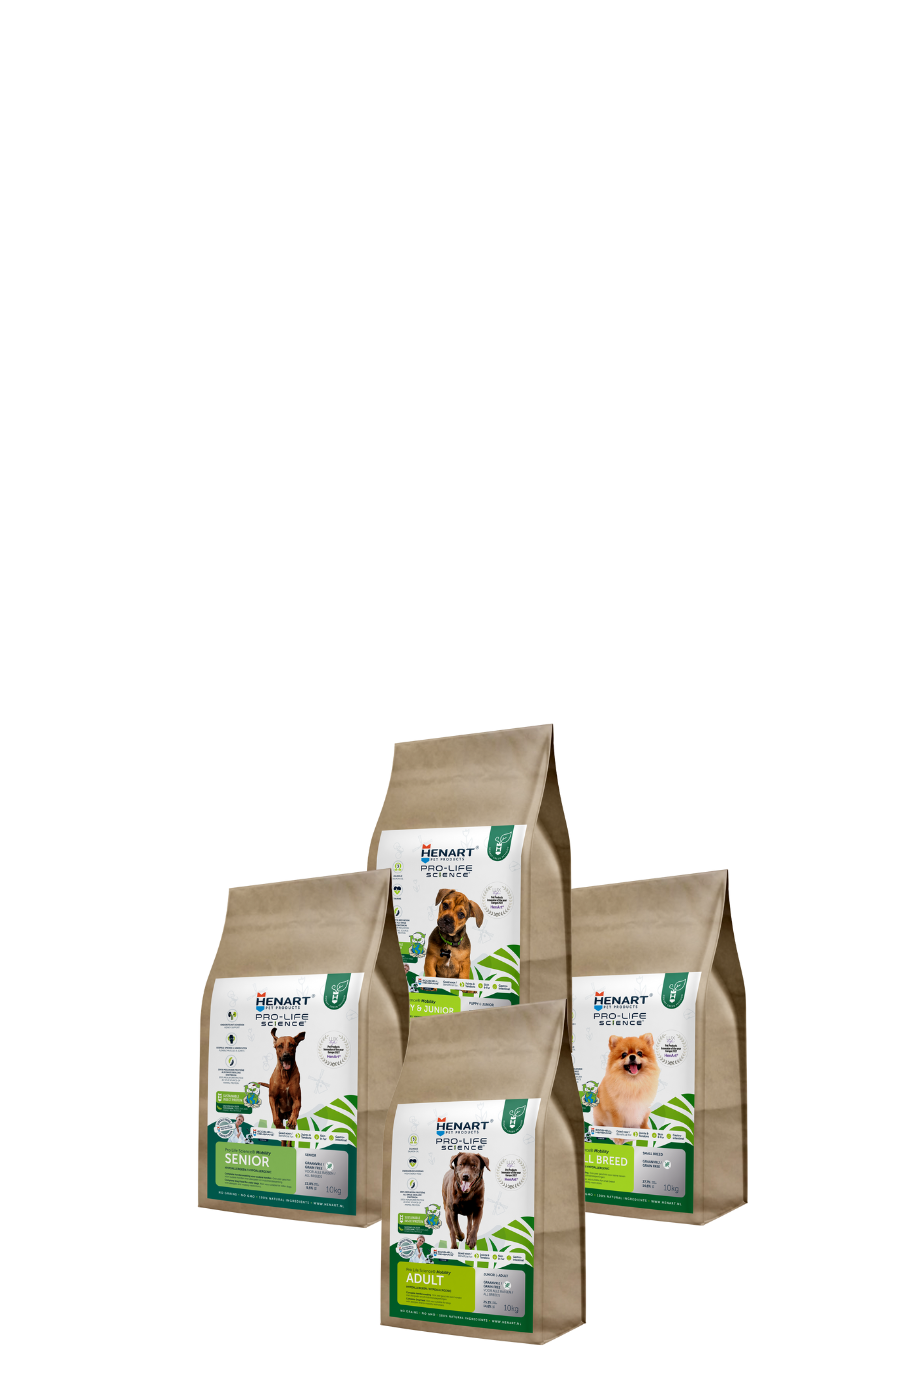 Zu sehen sind vier Packungen des HenArt Insektenfutters für unterschiedliche Hunderassen.